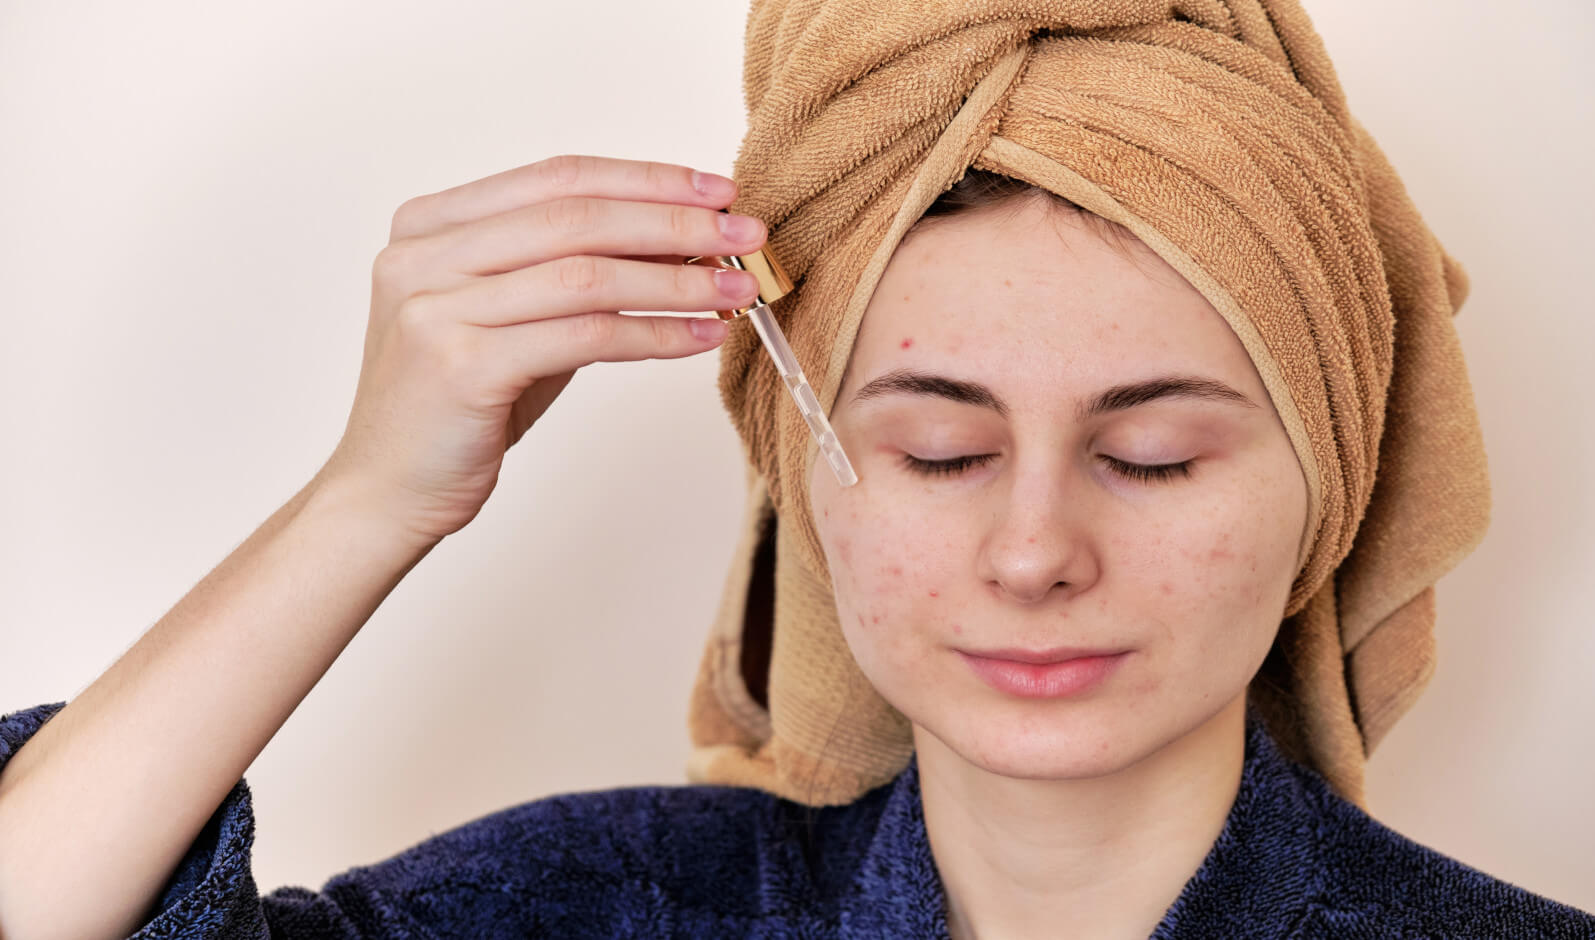 Applicare siero oli essenziali sul viso contro l'acne